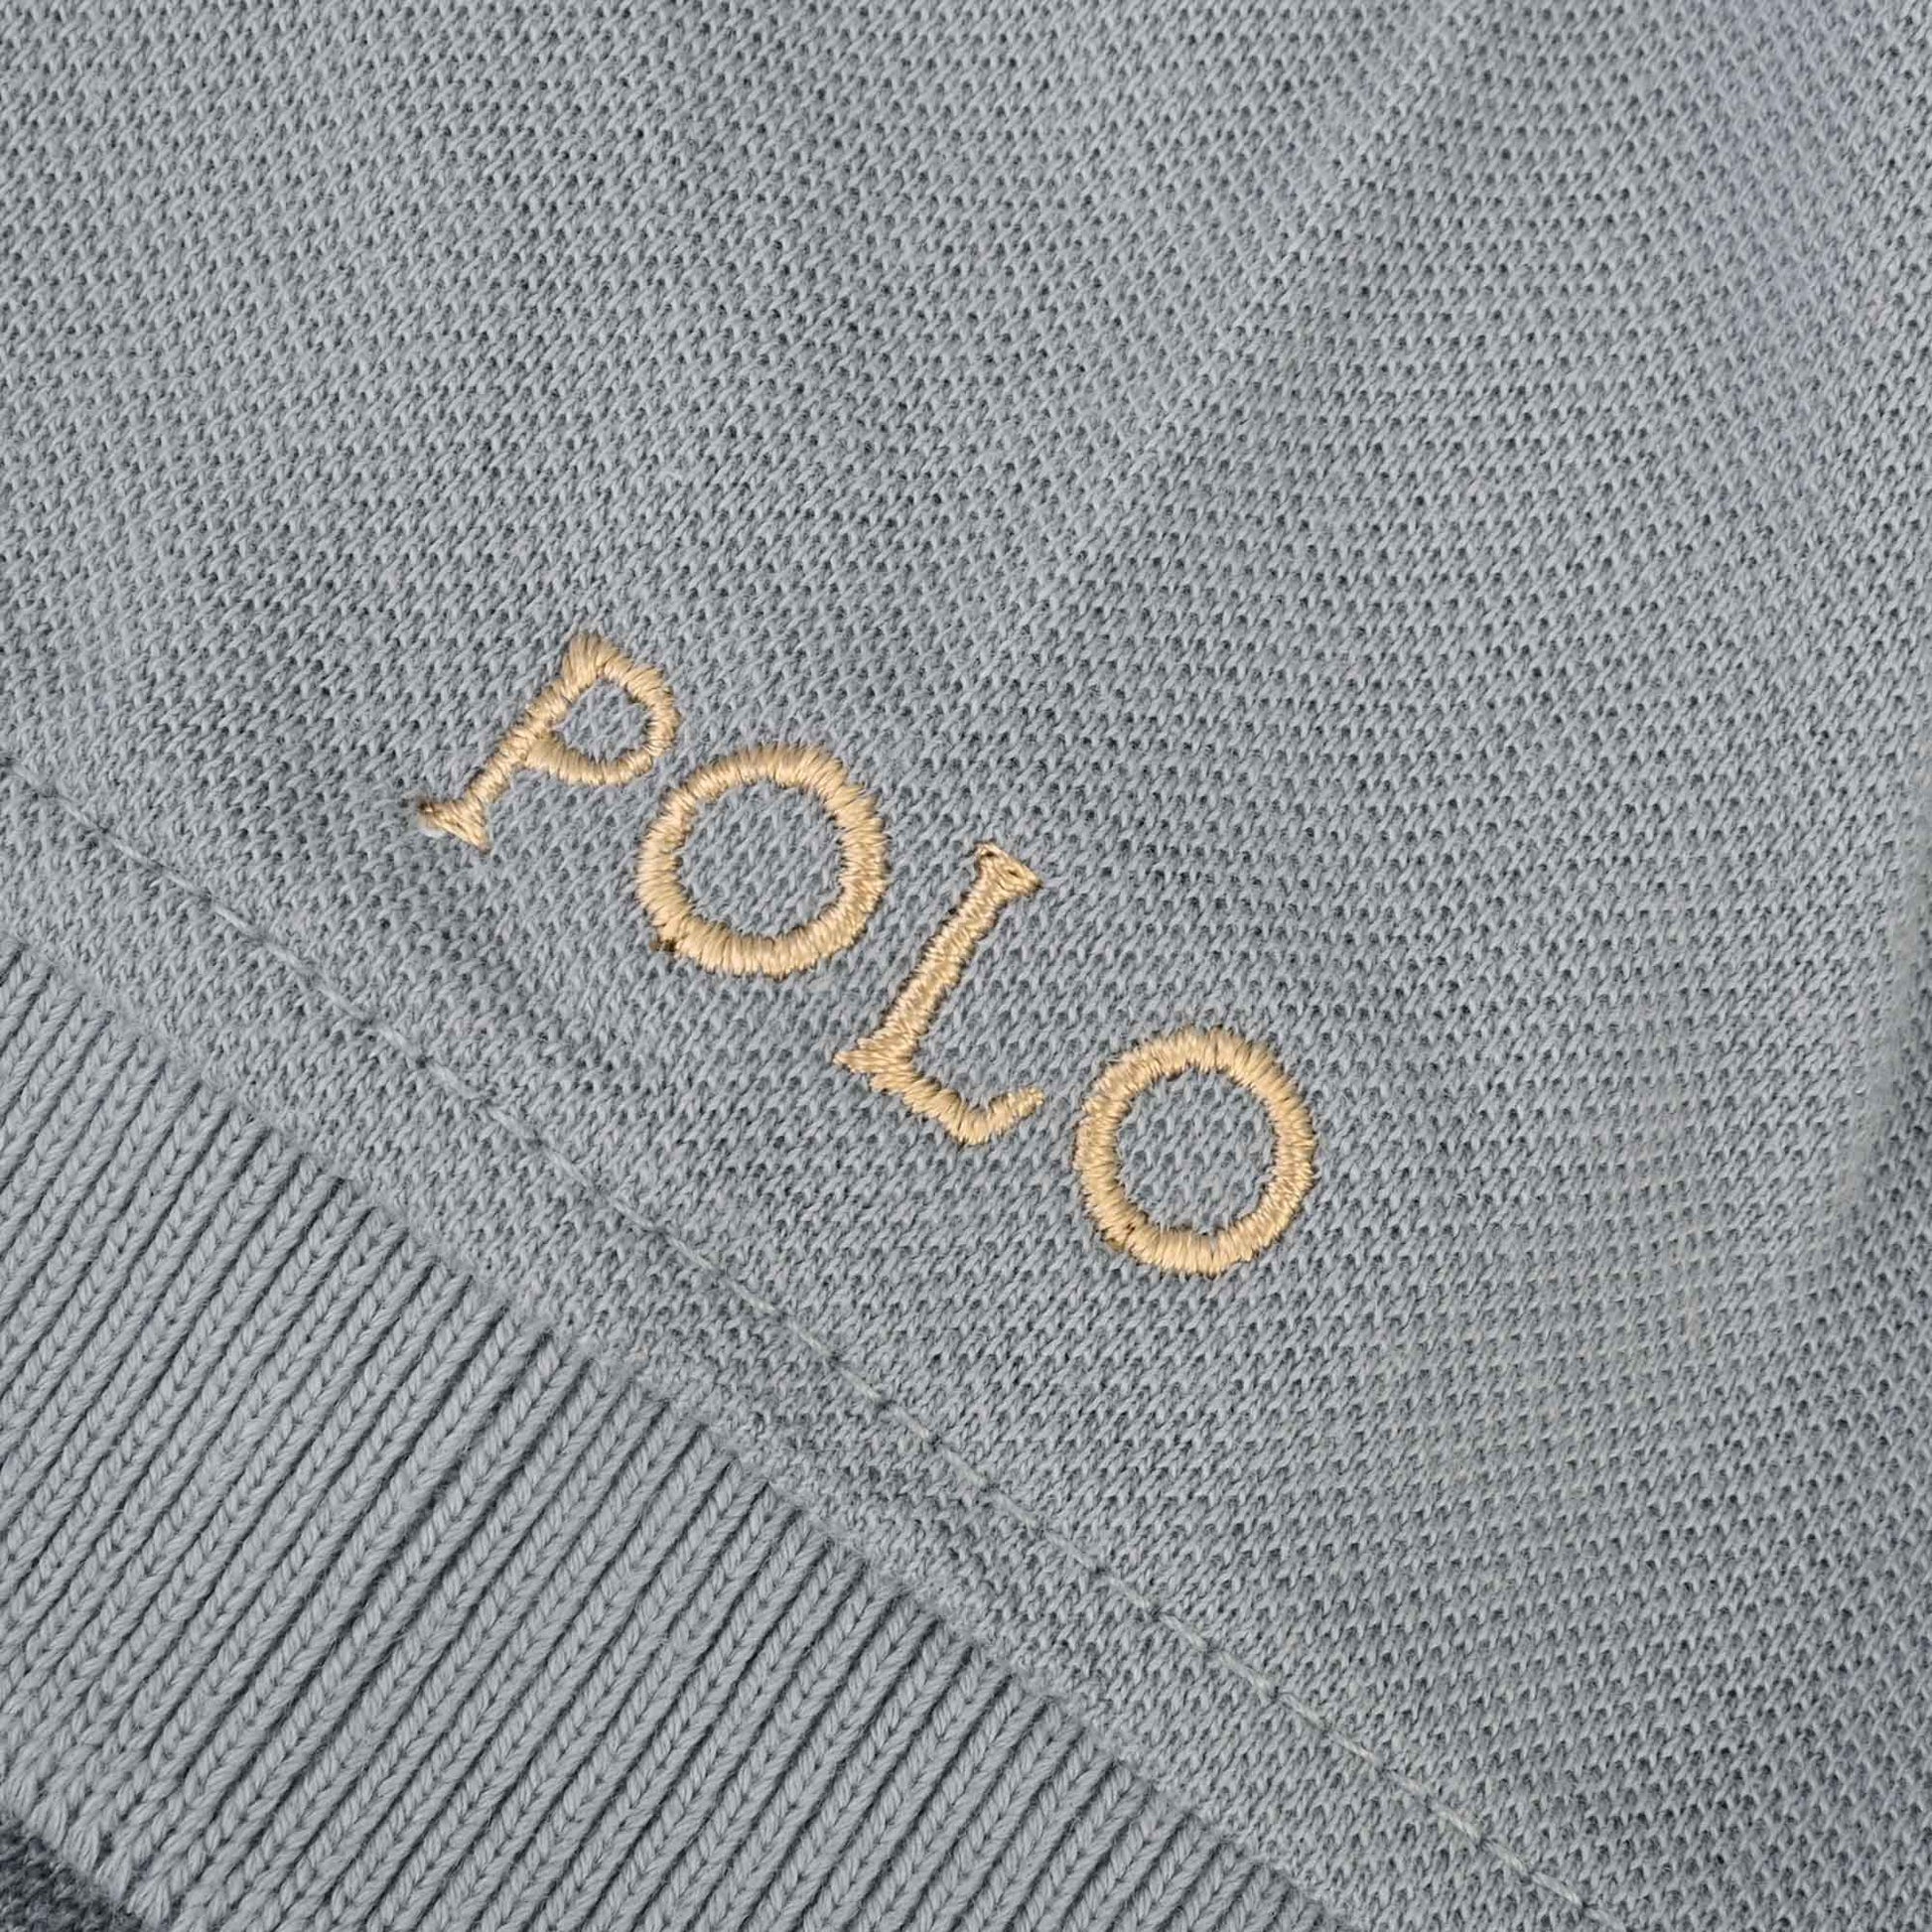 Polo Republica Men's Horse Rider & Crest Polo Embroidered Short Sleeve Polo Shirt